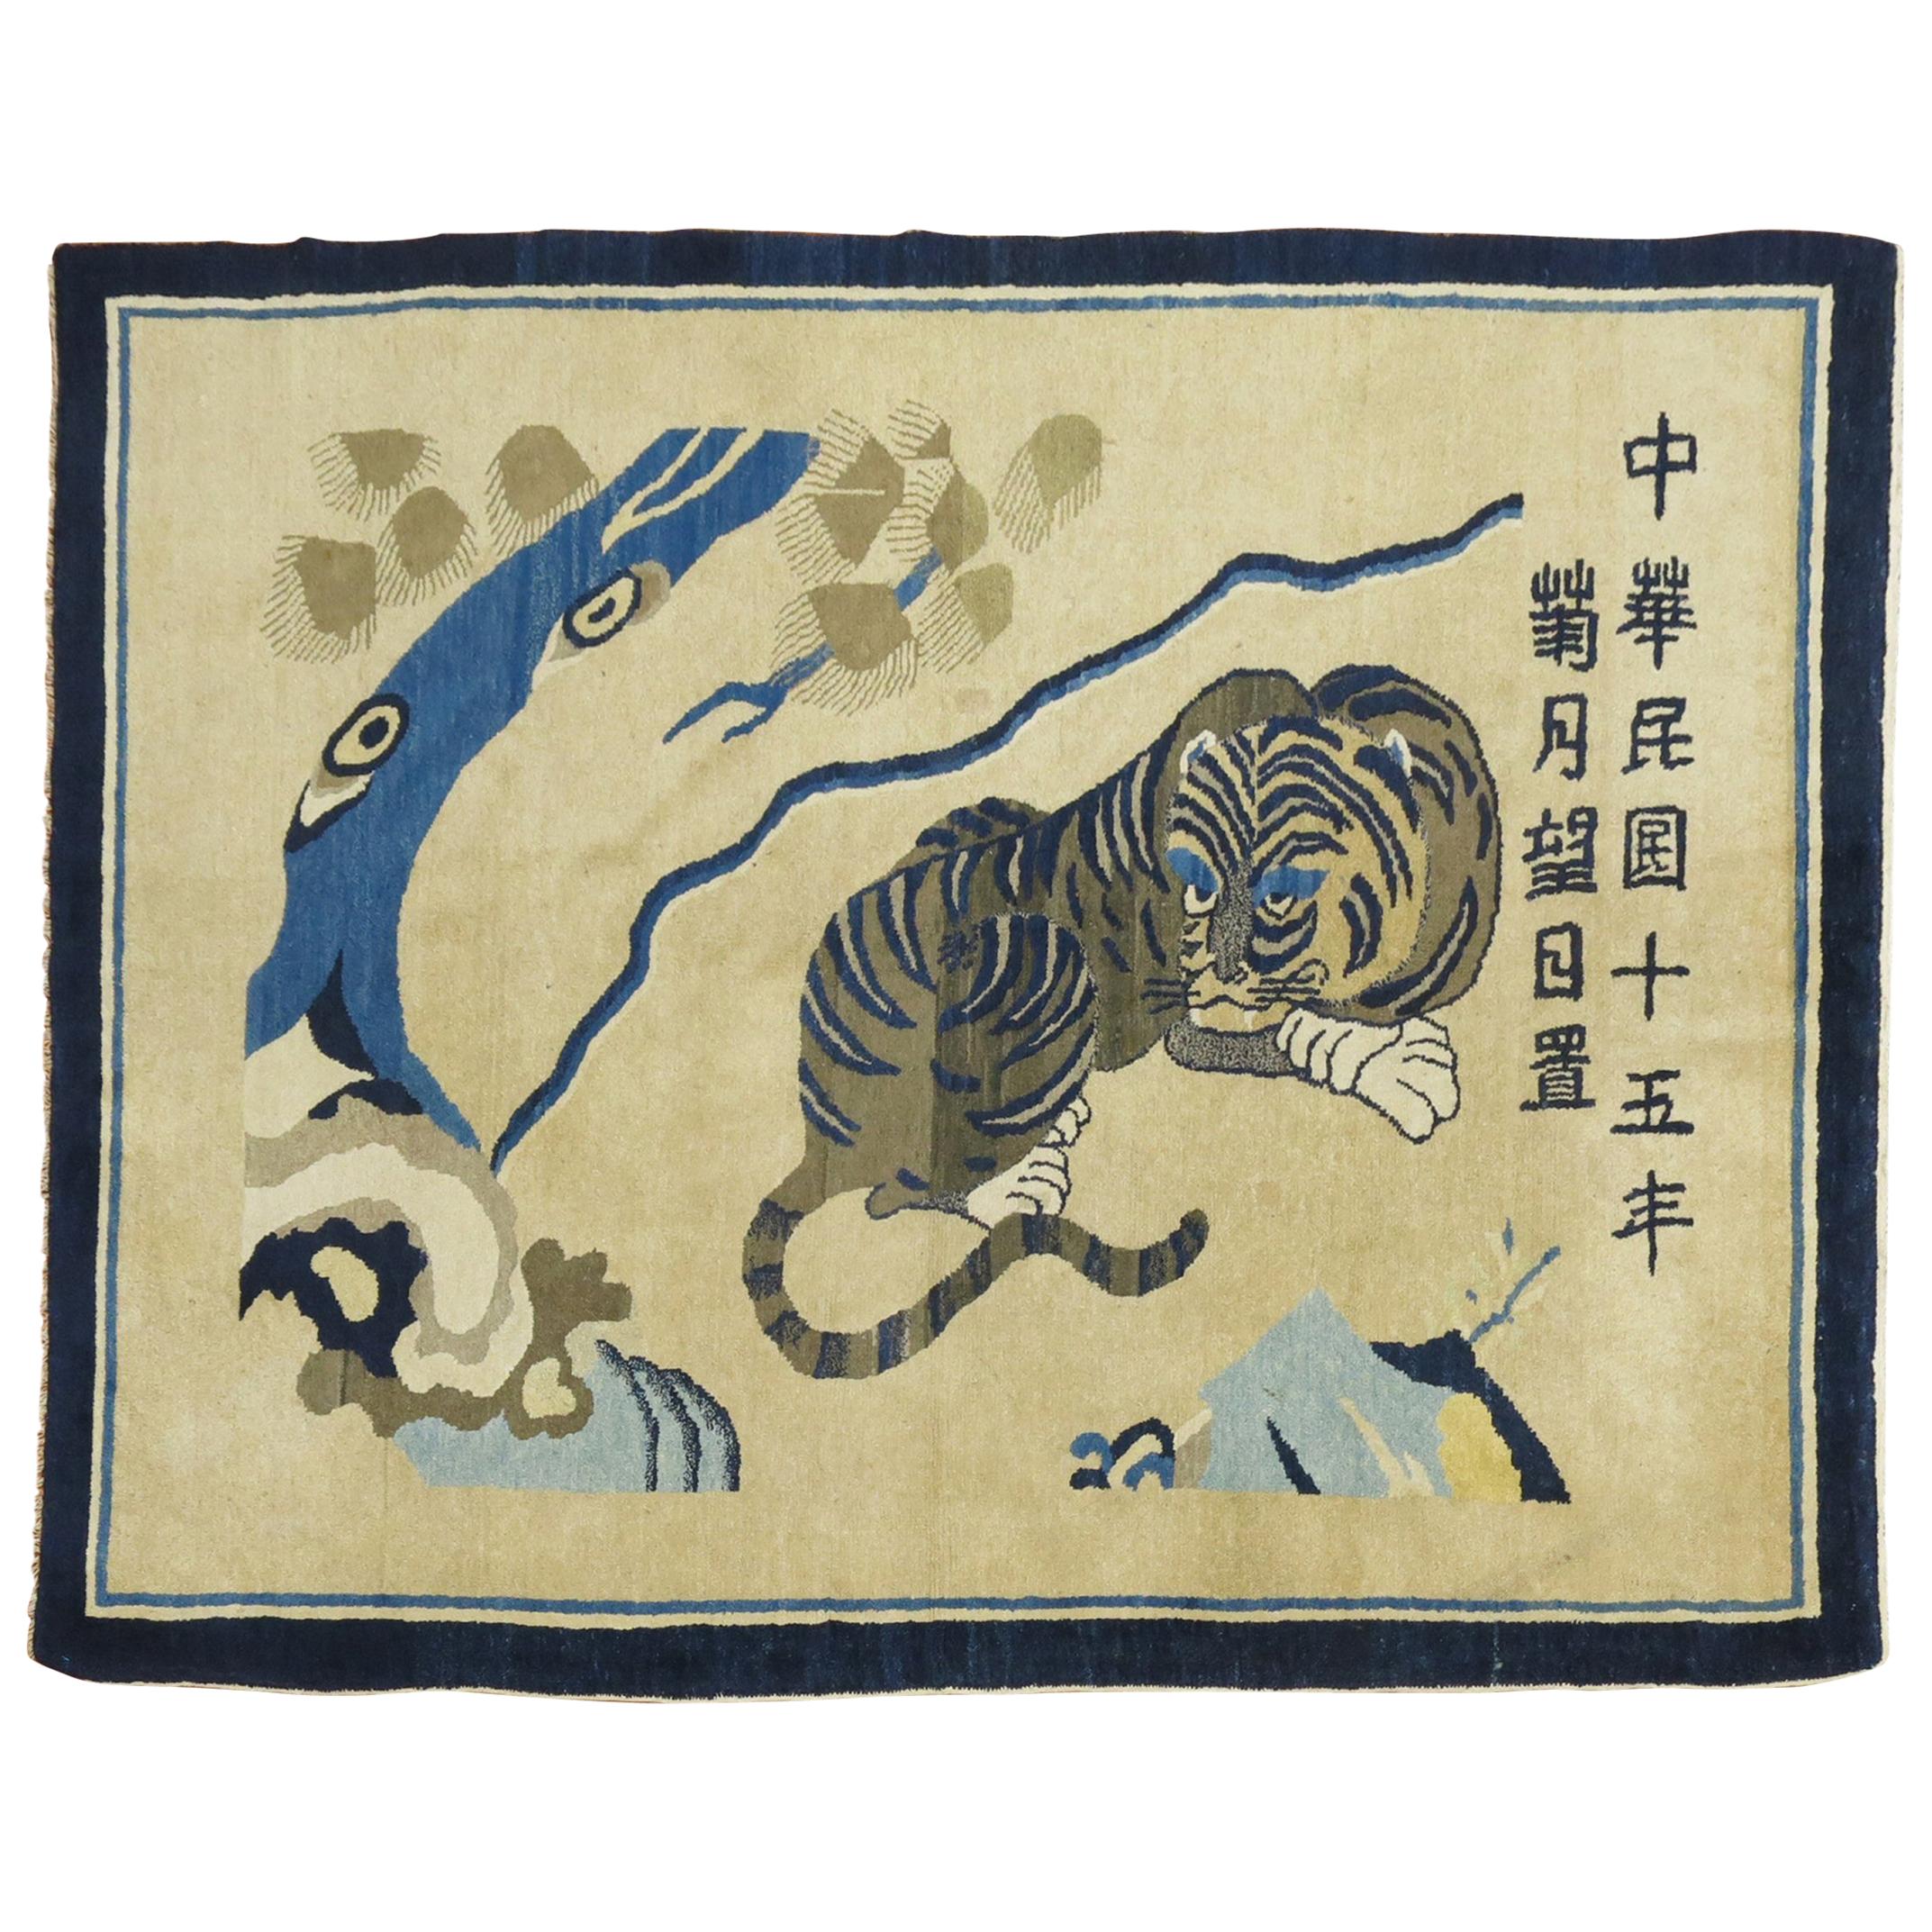 Tapis pictural spirituel chinois ancien représentant un tigre, daté de 1926